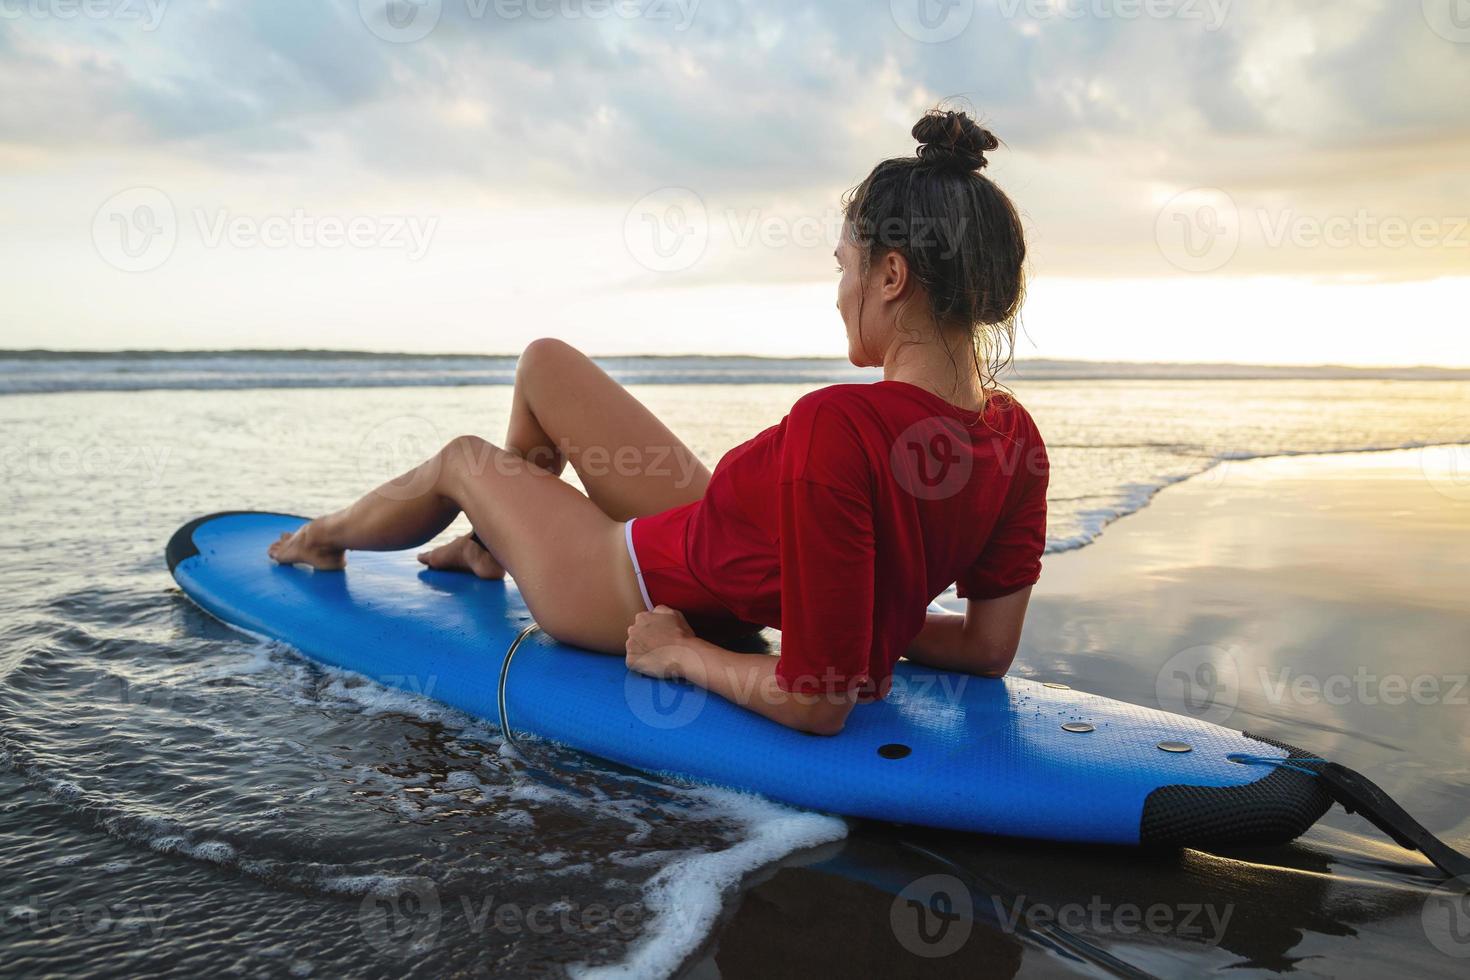 Frau, die nach ihrer Surfsession auf dem Surfbrett am Strand sitzt foto